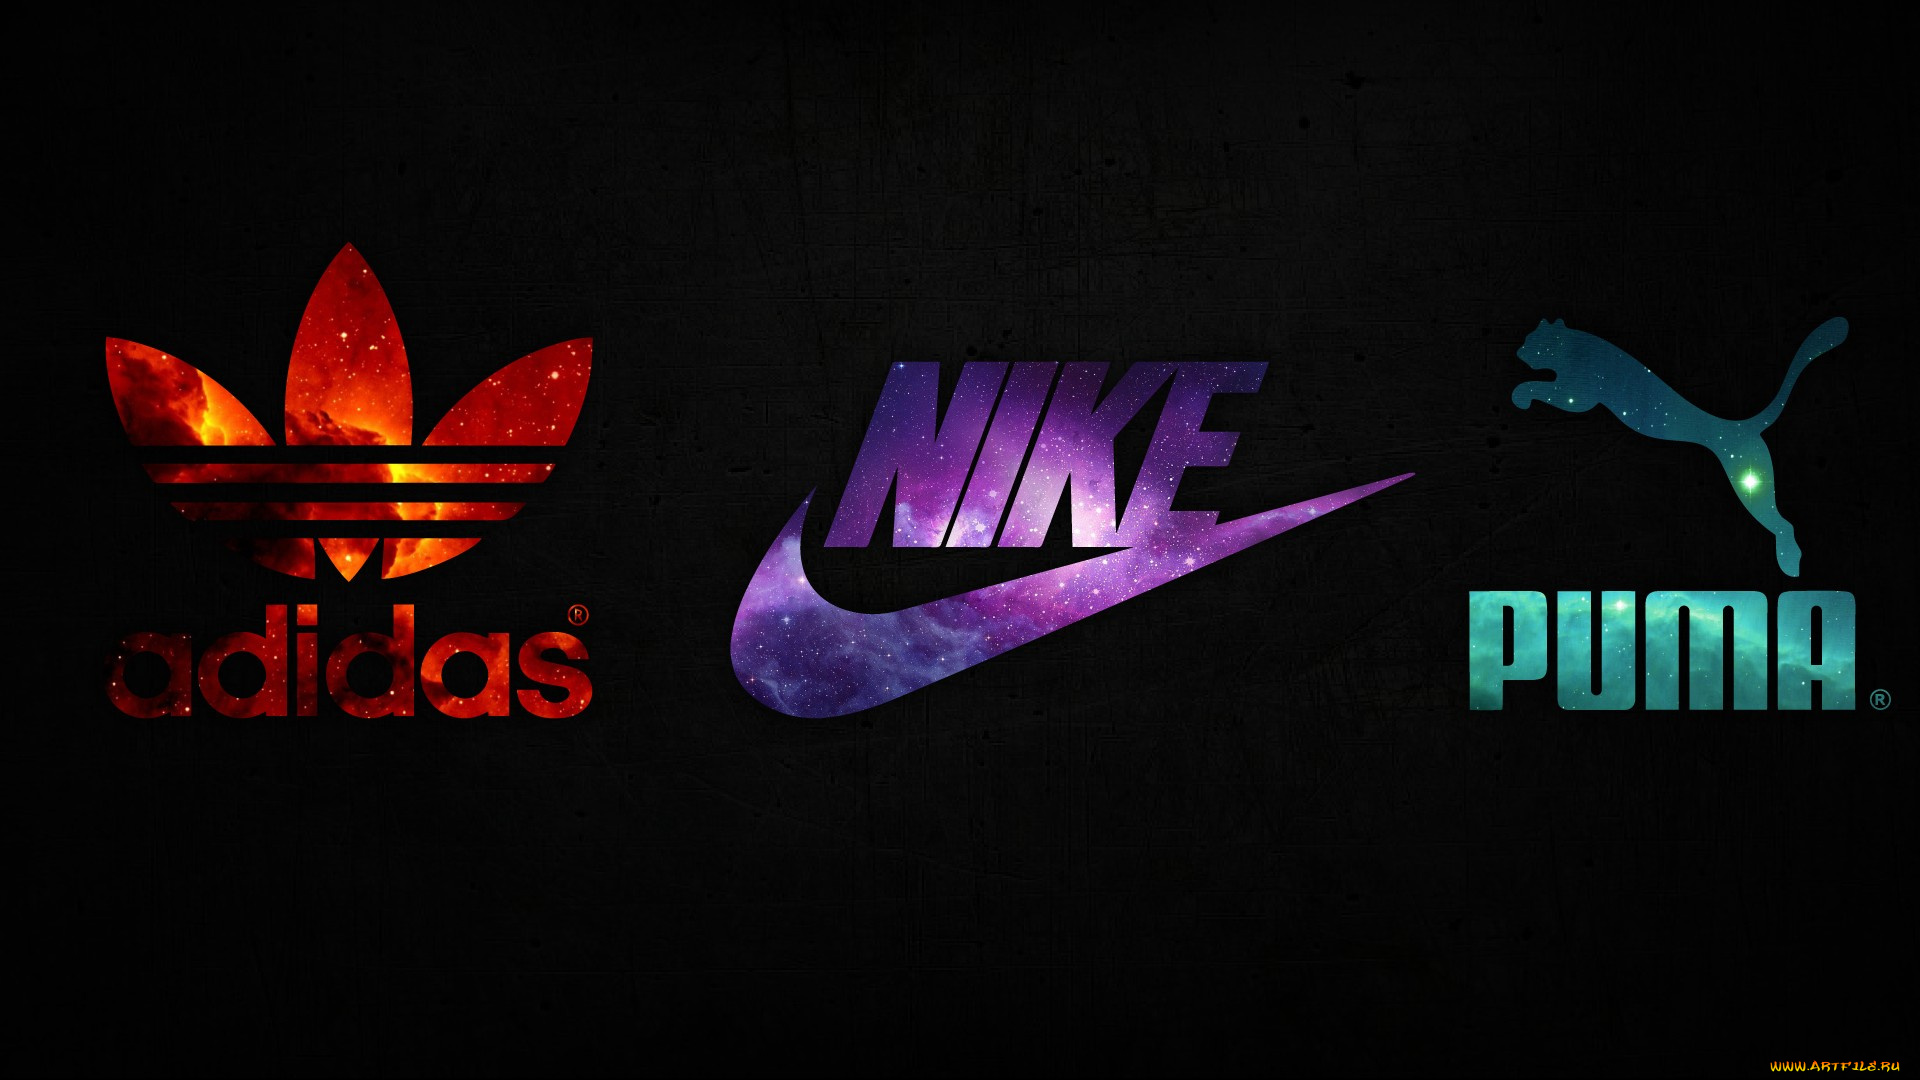 бренды, -, другое, nike, adidas, puma, космос, логотип, красный, фиолетовый, бирюзовый, черный, фон, cпортивная, одежда, обувь